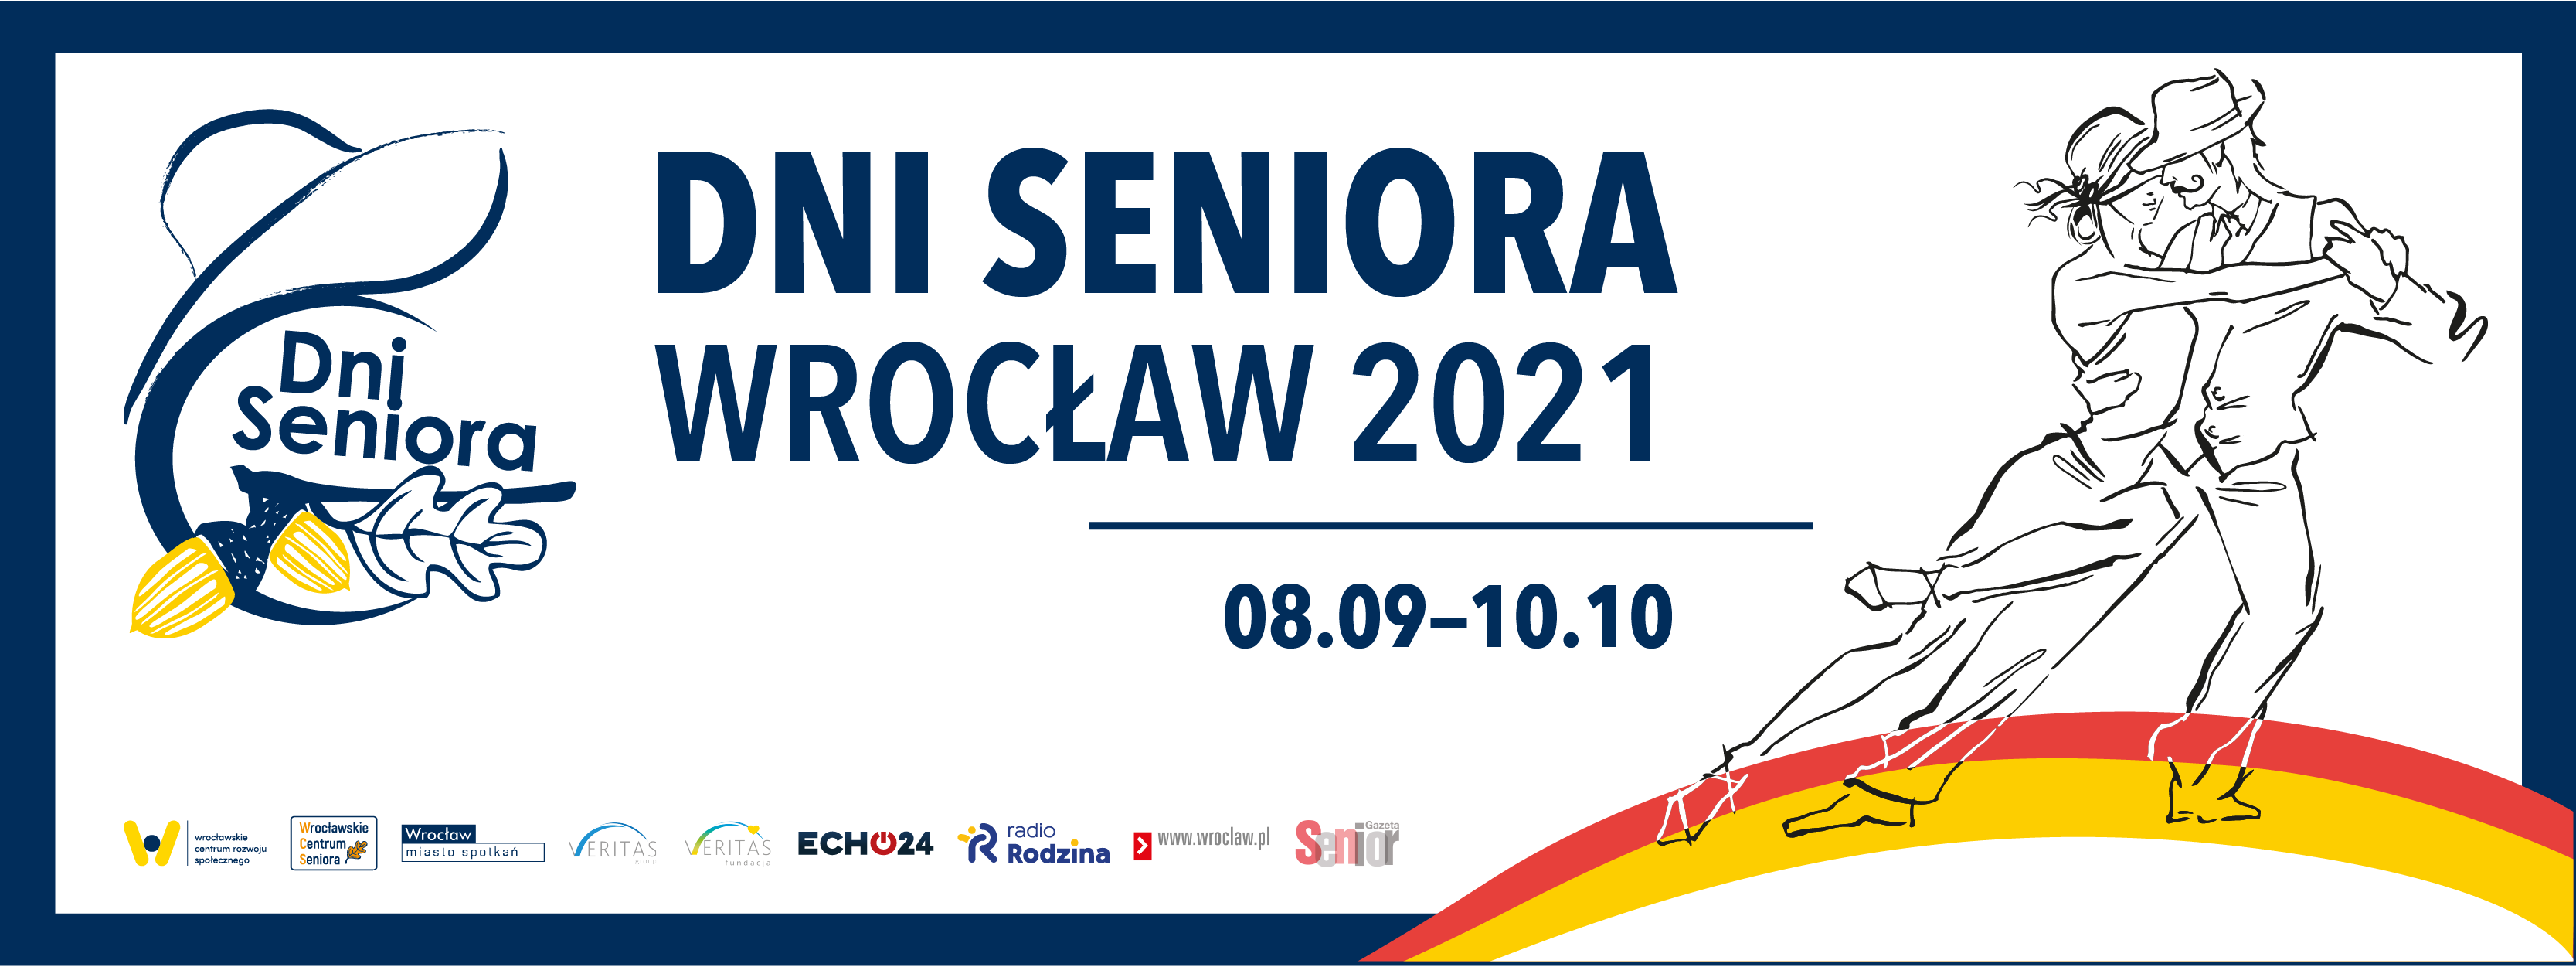 Dni Seniora Wrocław 2021